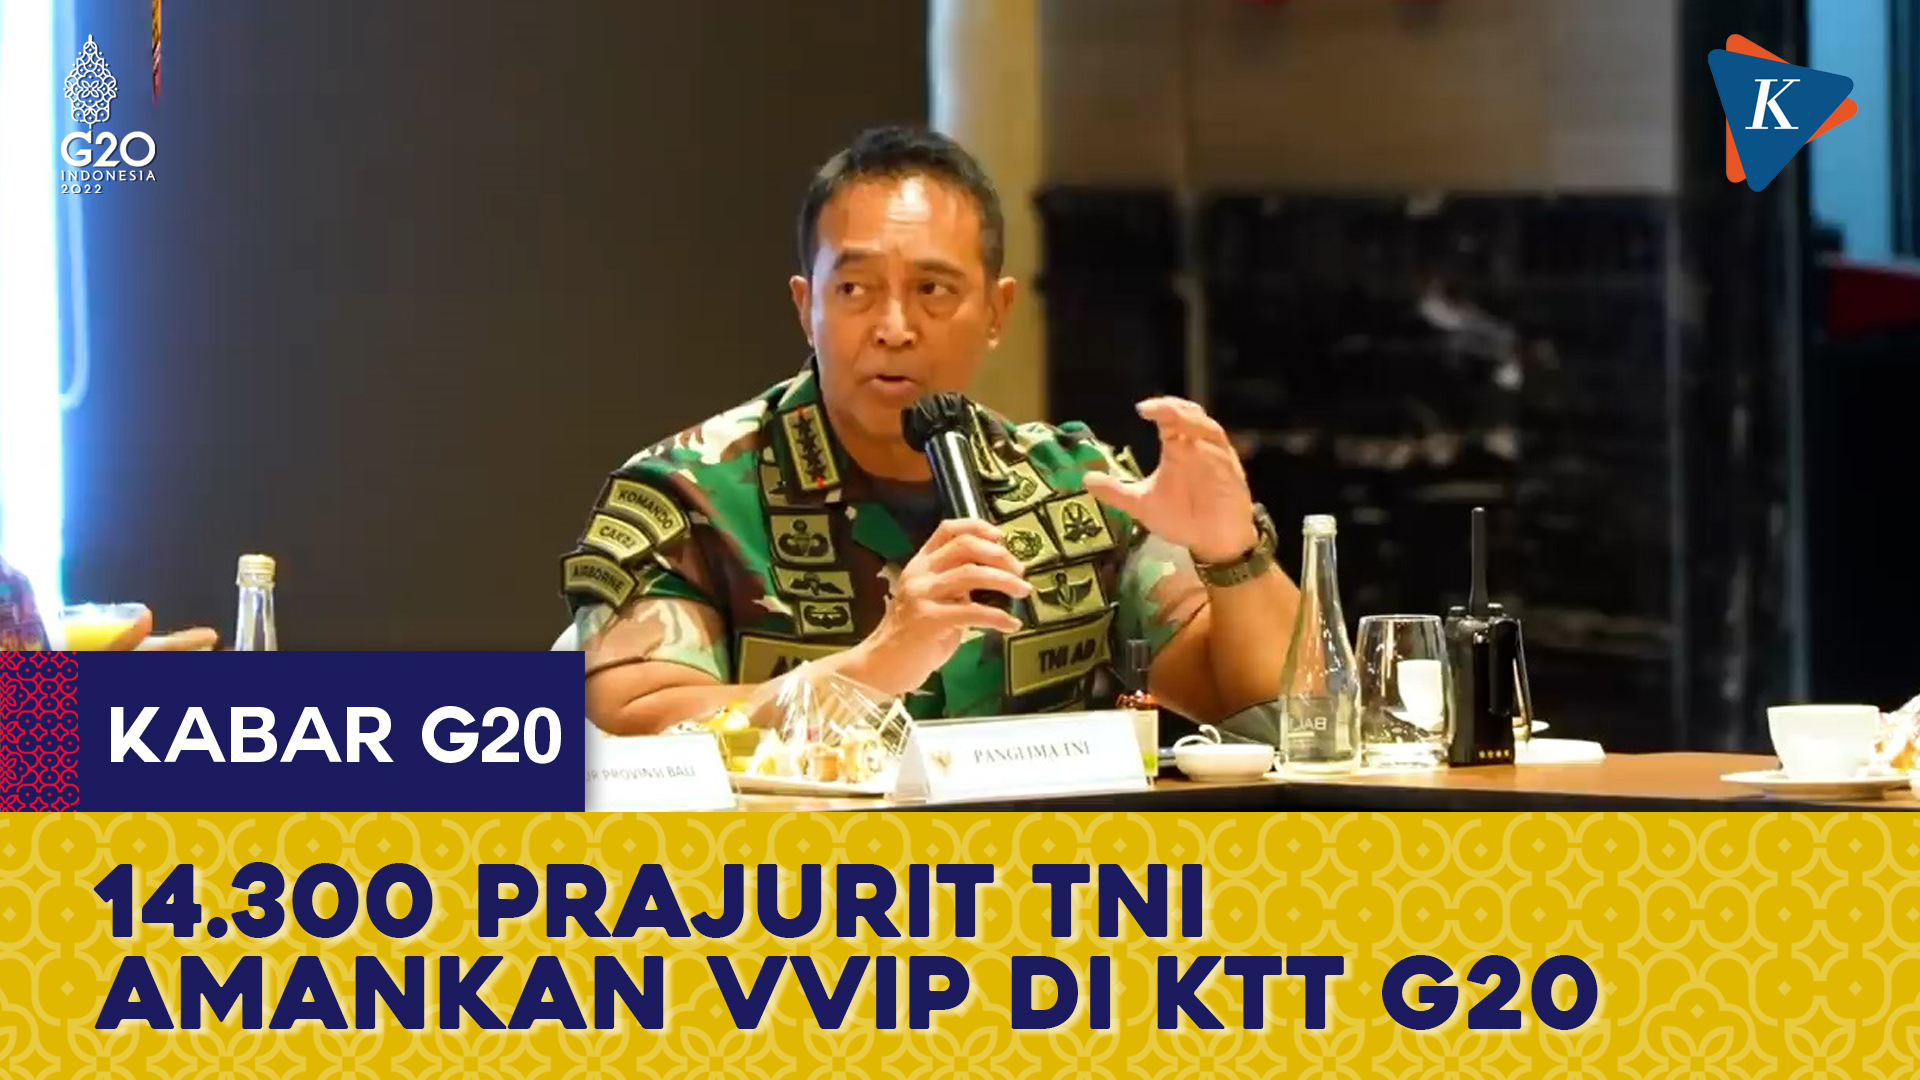 Panglima TNI Kerahkan 14.300 Prajurit untuk Amankan Titik VVIP pada KTT G20